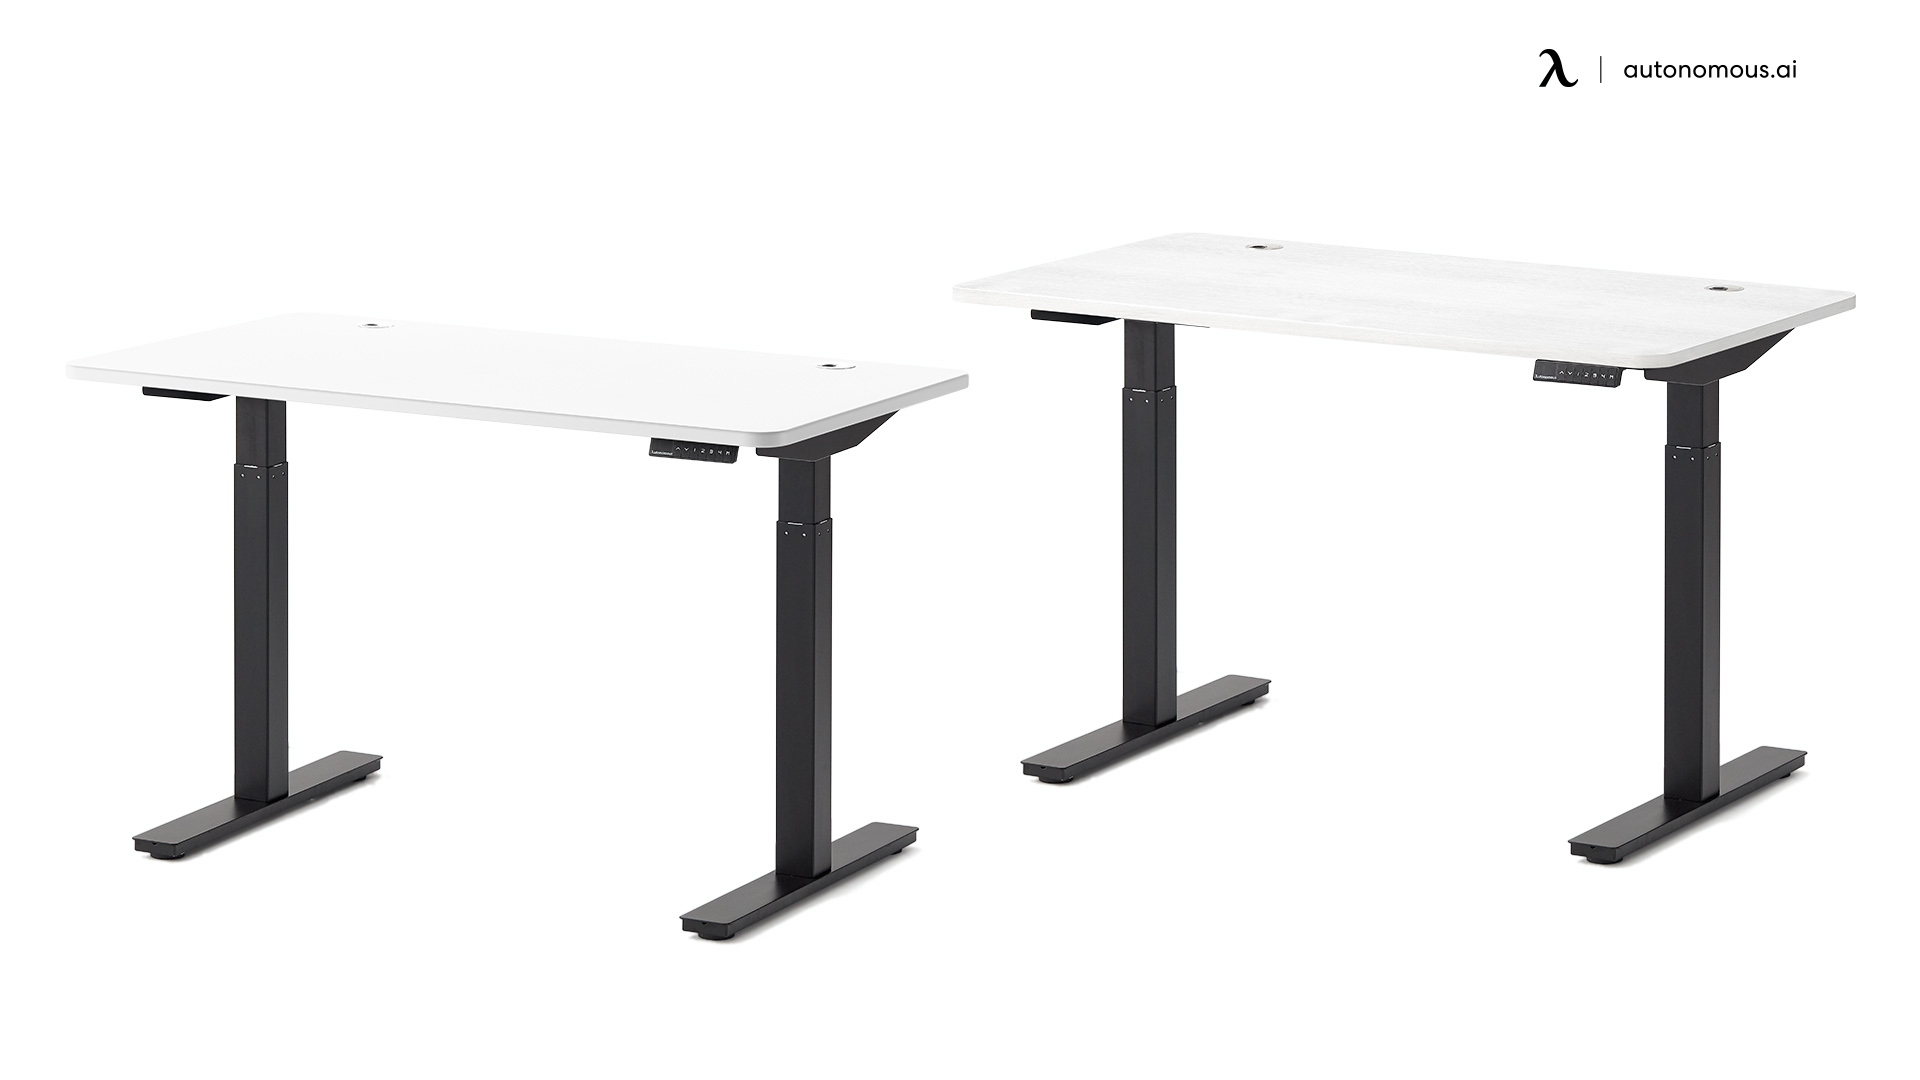 SmartDesk Core black and white desk